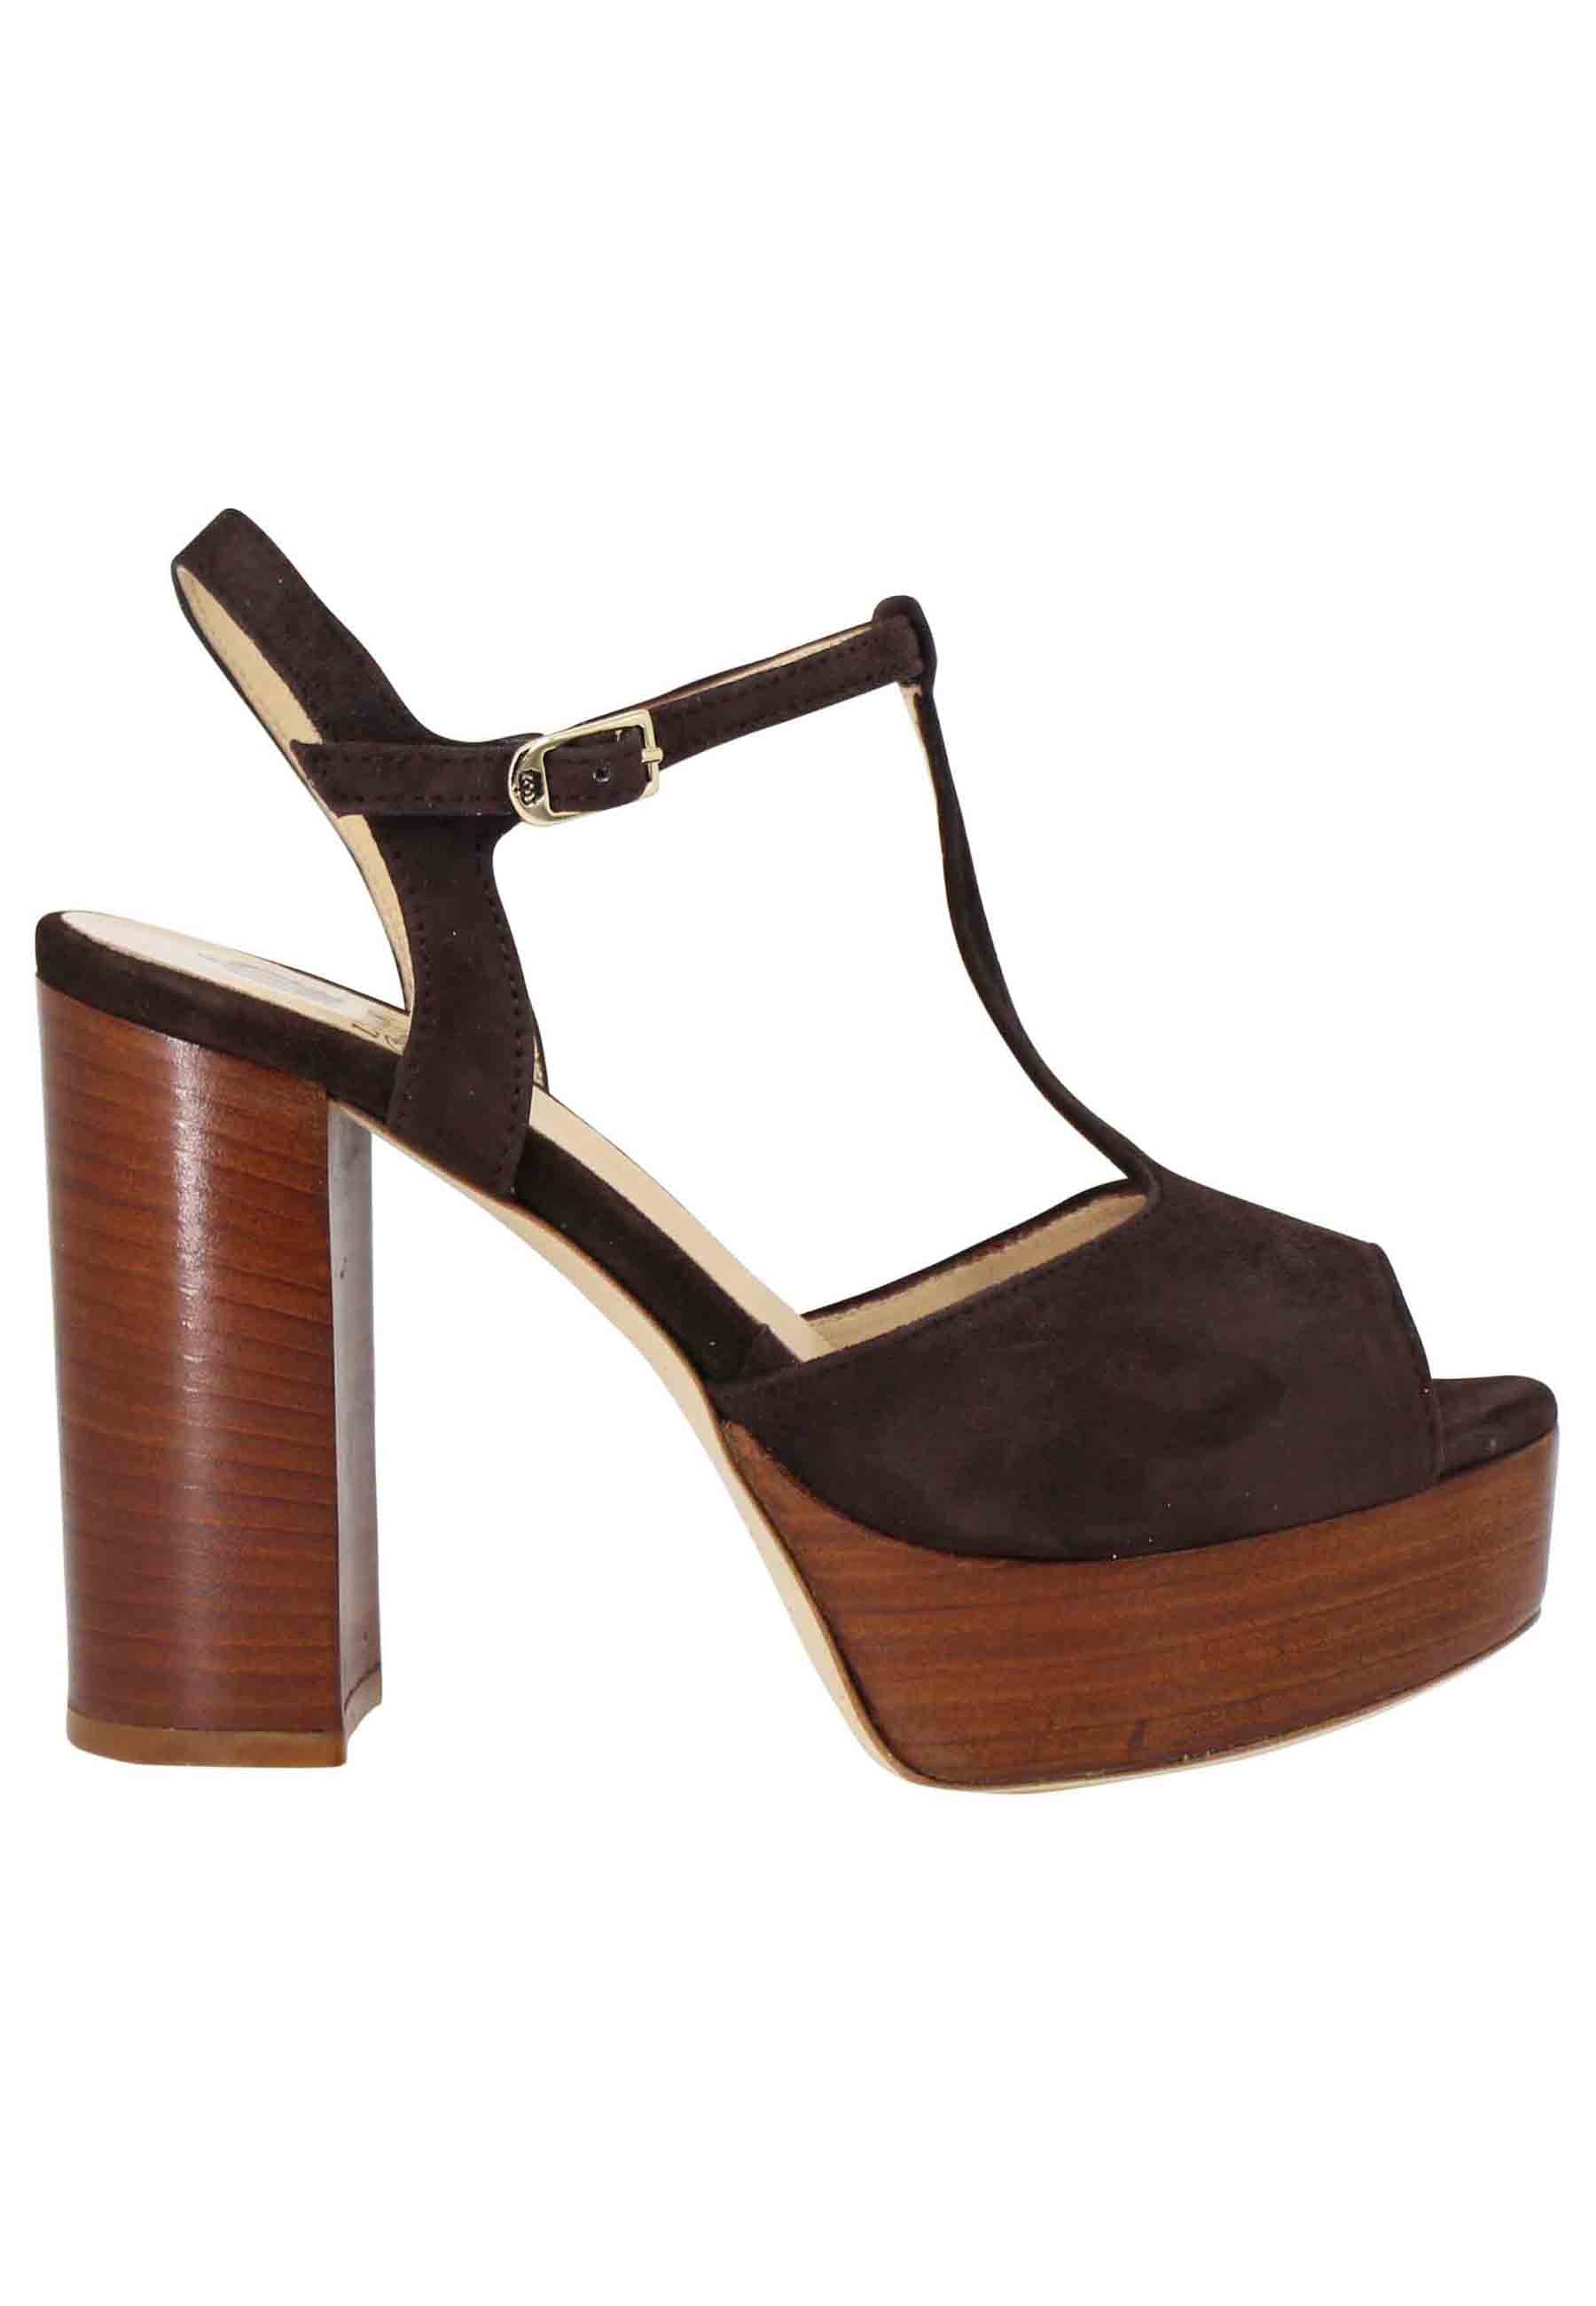 Women's sandals in dark brown suede with high heel strap and platform